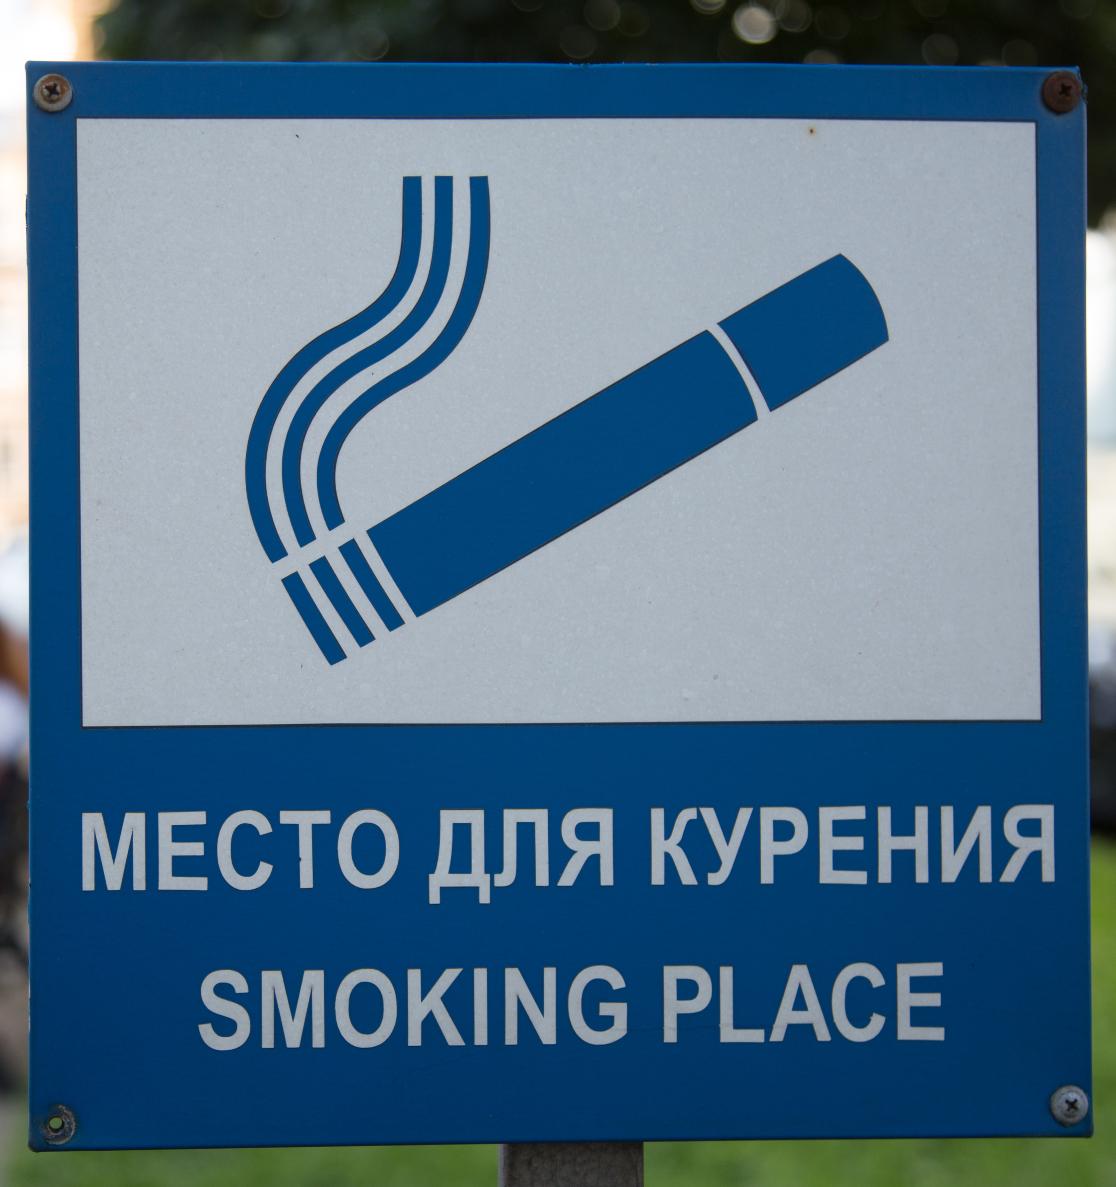 За пандемию в России стало на 1,3 млн меньше курильщиков